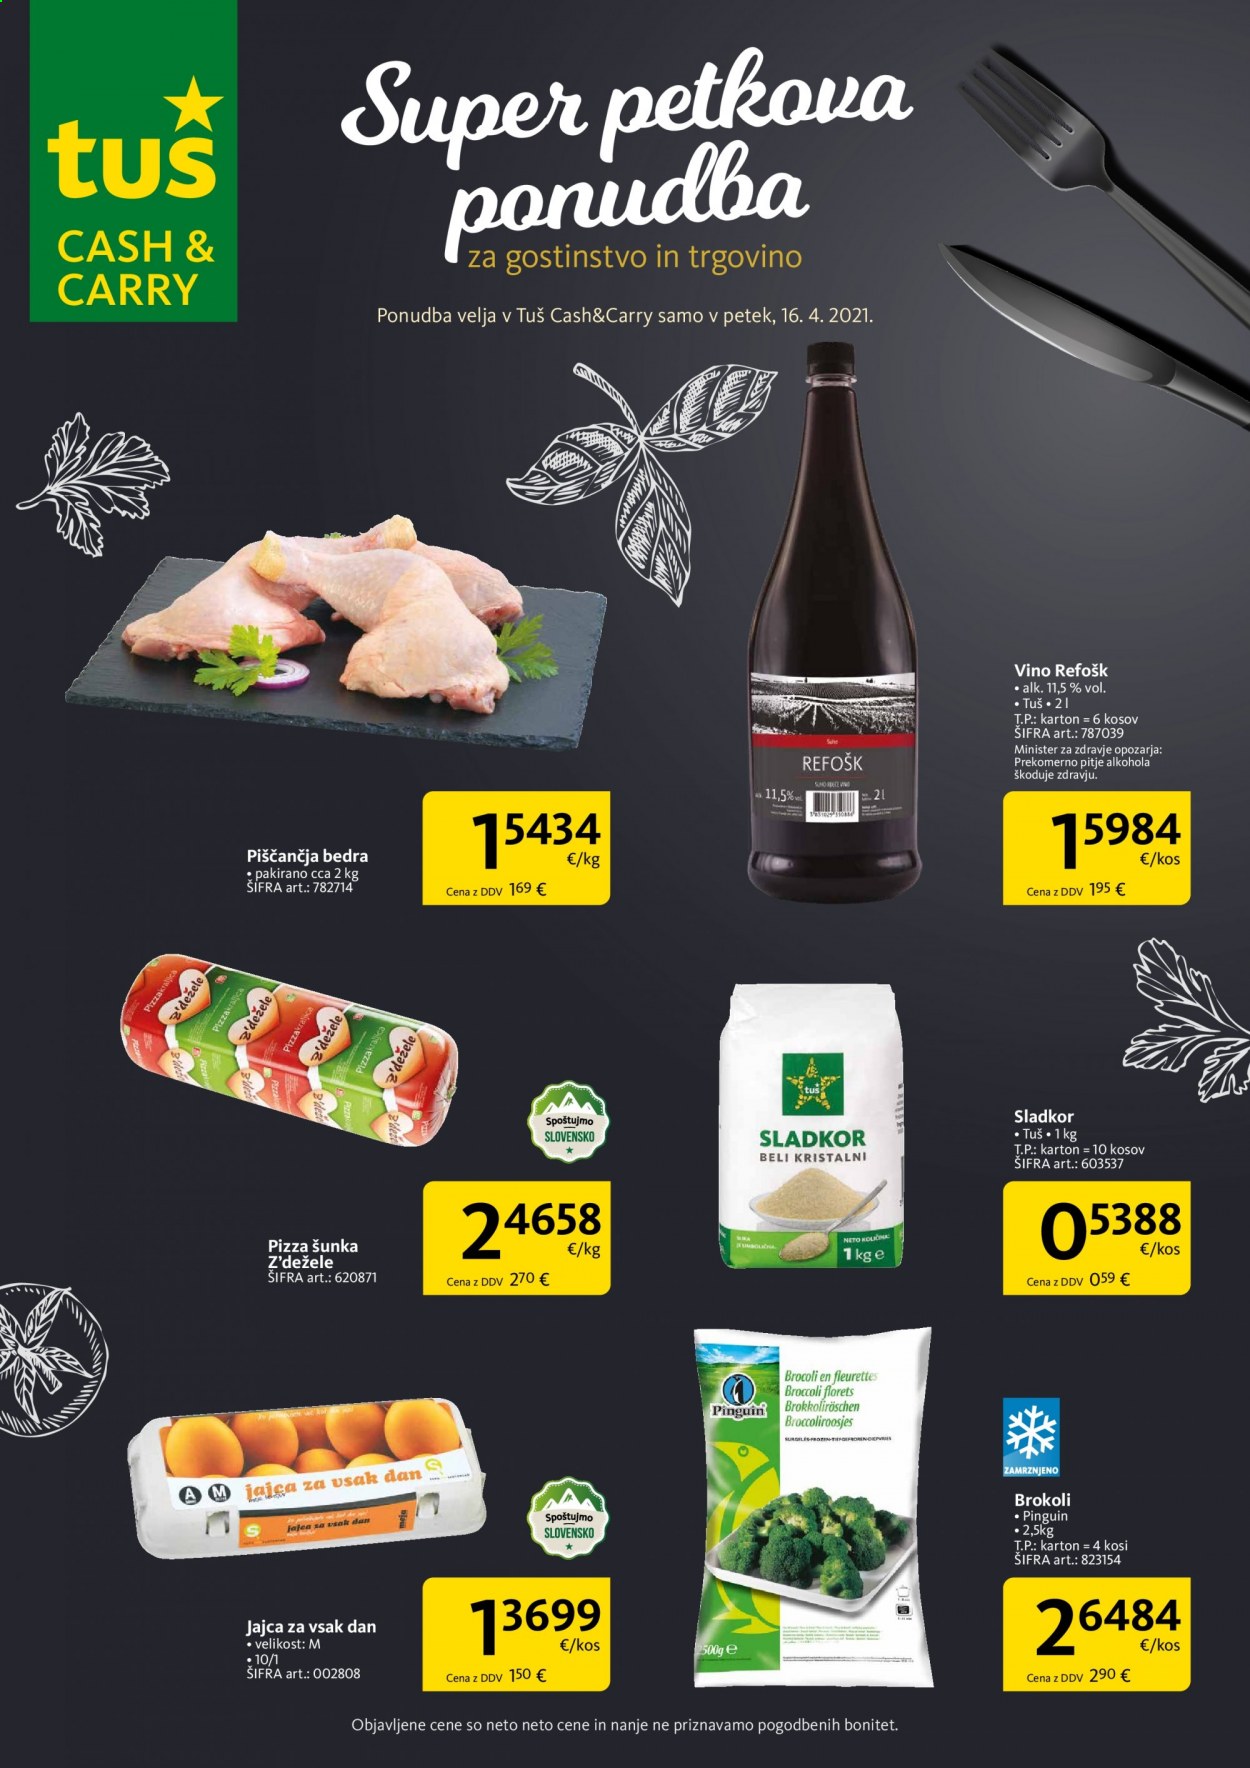 thumbnail - Tuš Cash & Carry katalog - 16.4.2021 - 16.4.2021 - Ponudba izdelkov - piščančja bedra, piščančje meso, vino, šunka, jajca, sladkor. Stran 1.